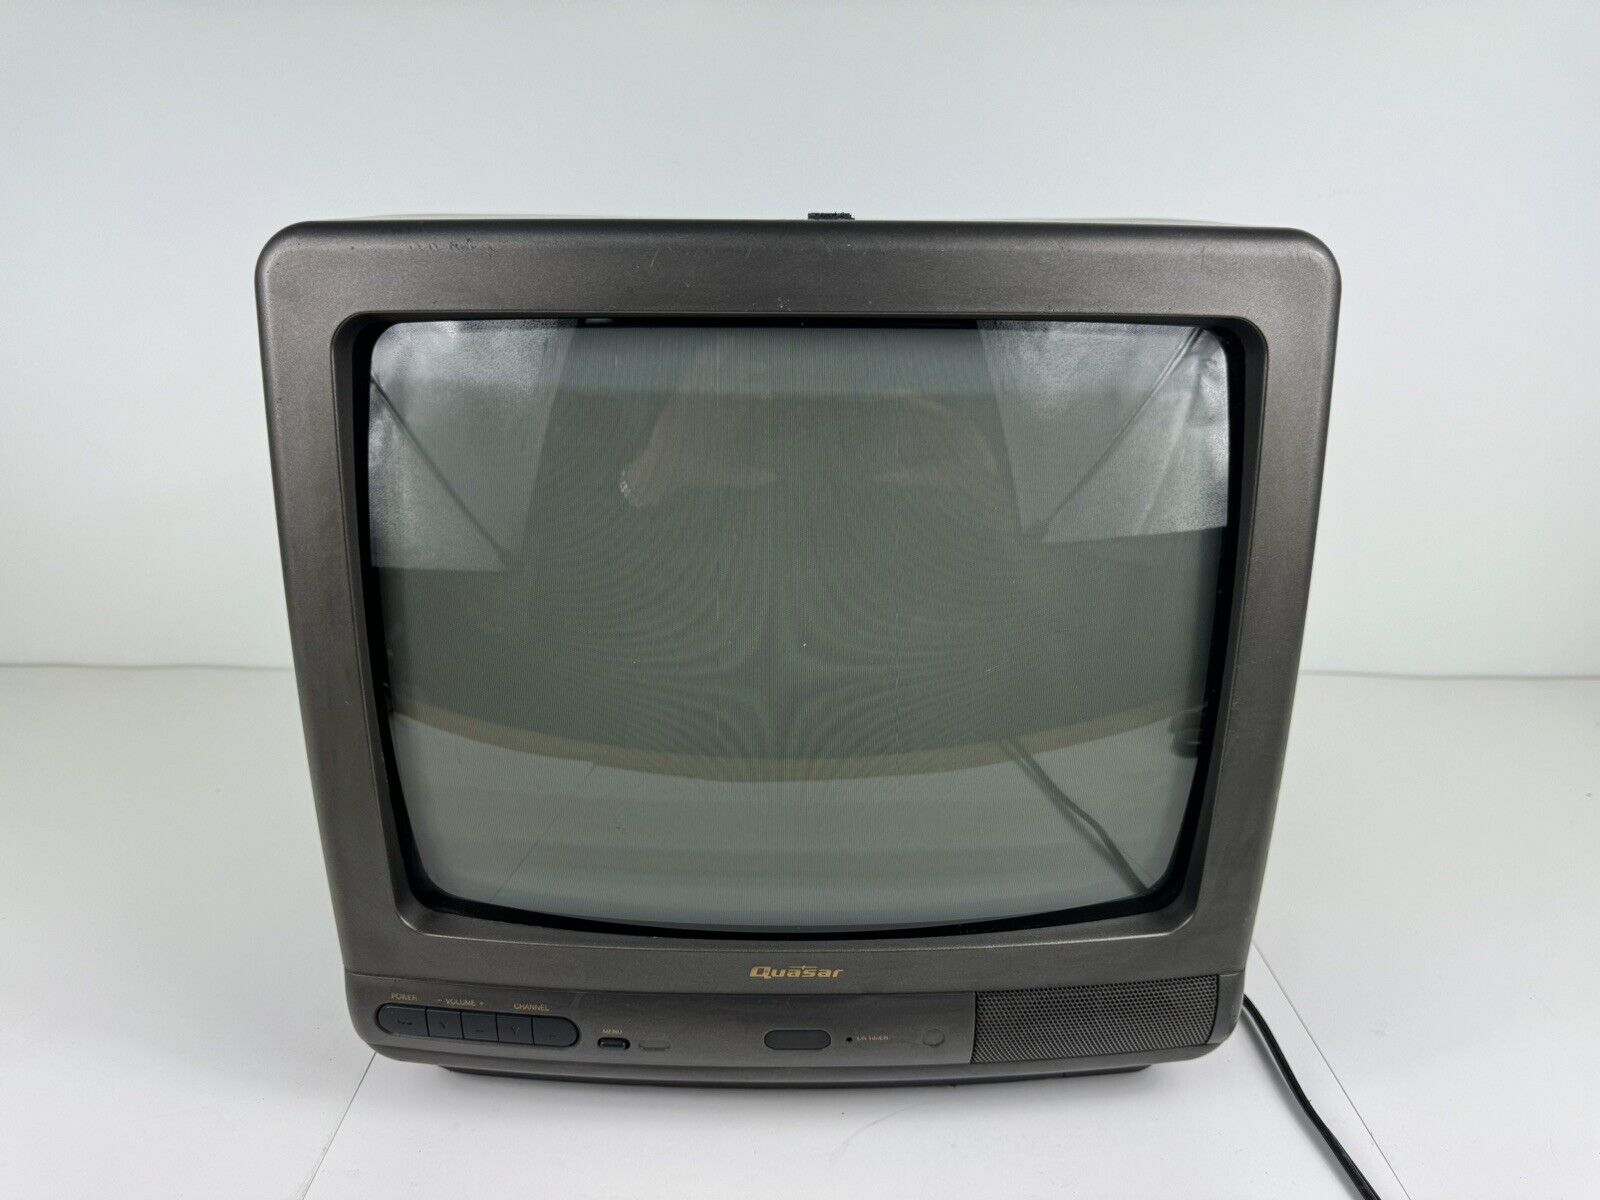 Works Quasar TV Set Model QC-14F10R (1991)